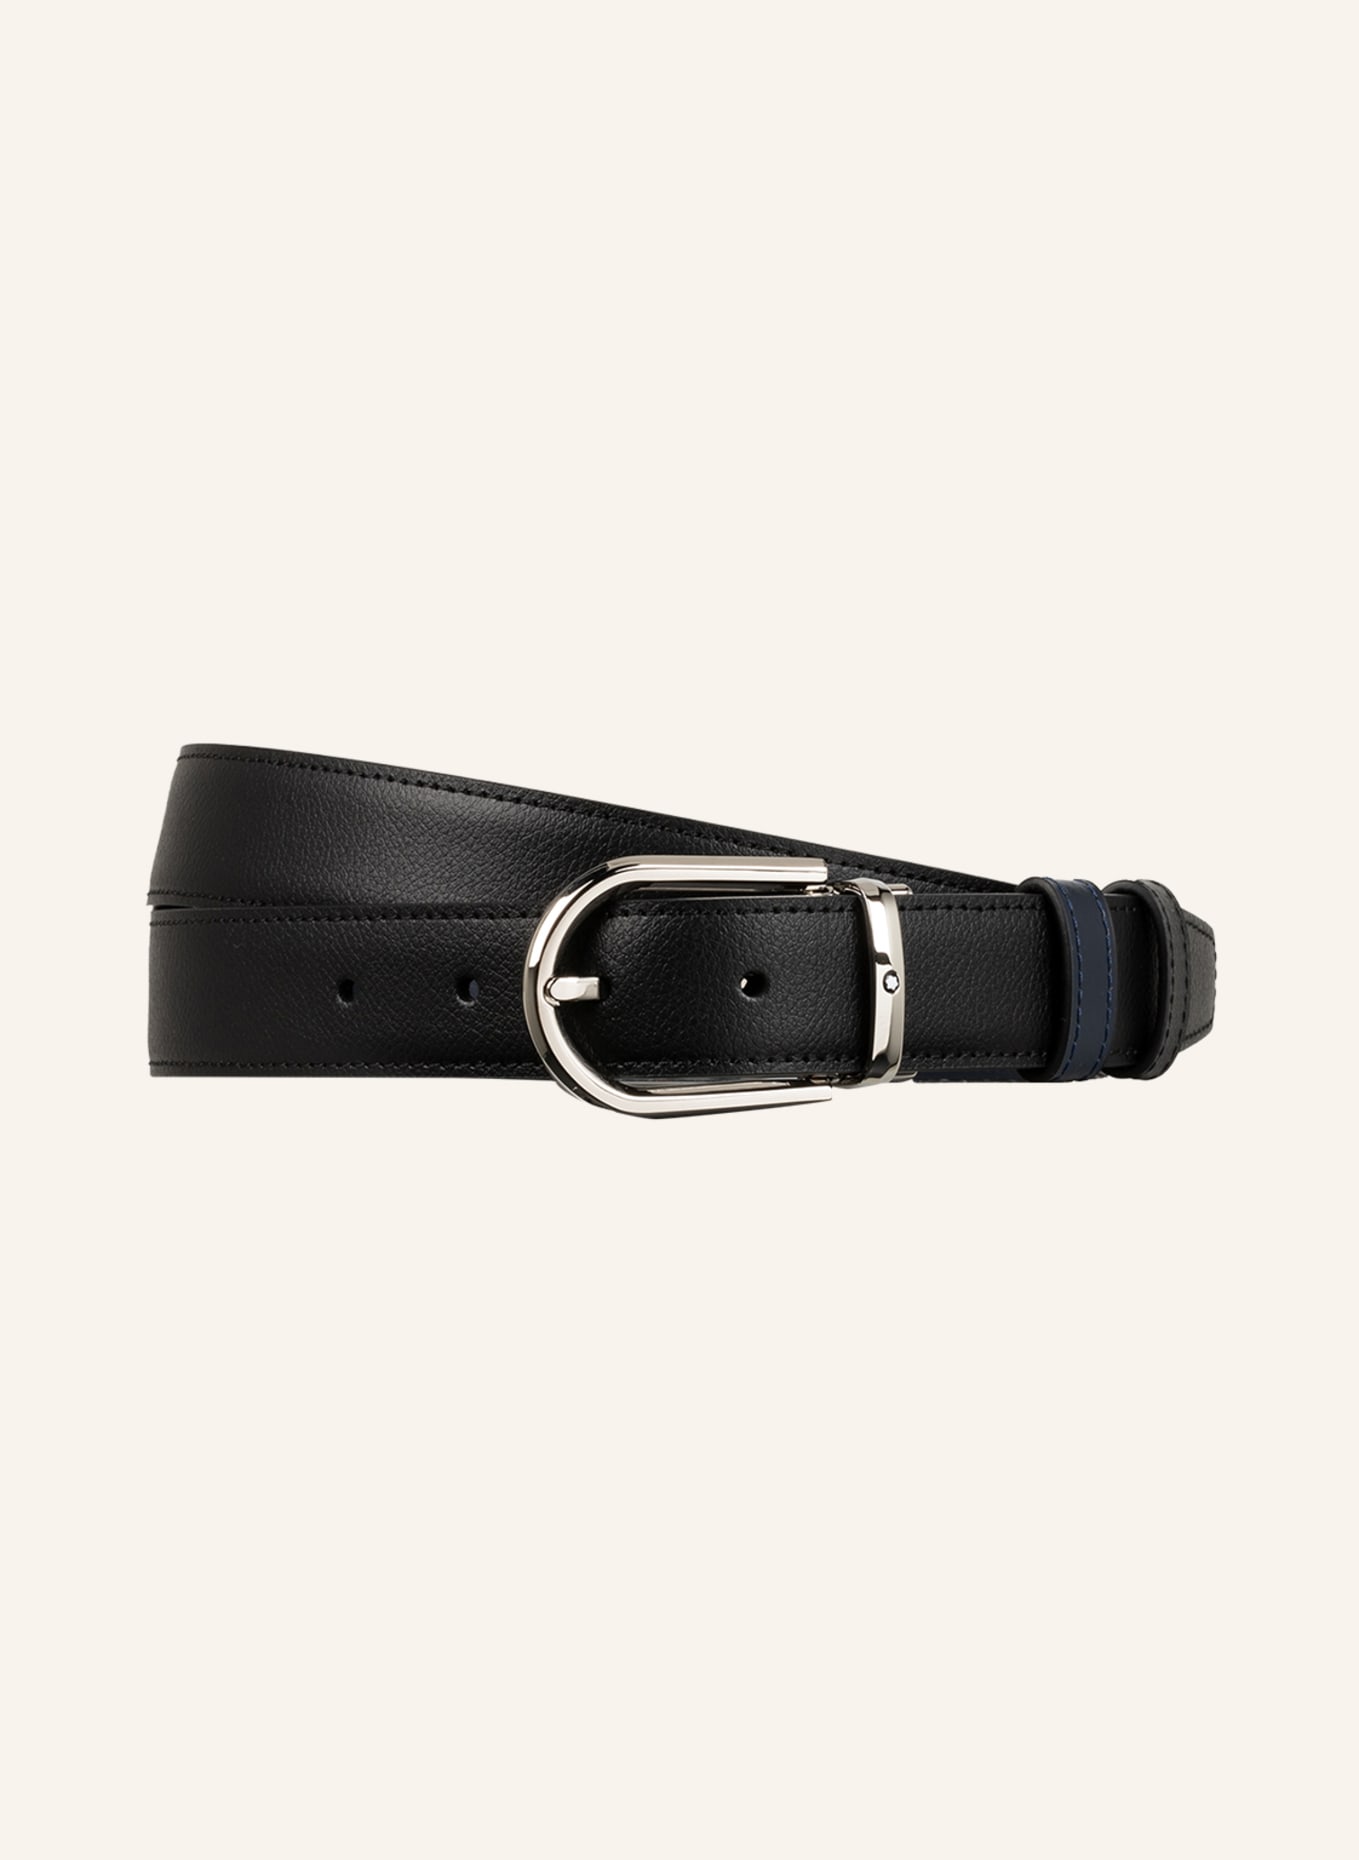 MONTBLANC Leather belt, Color: DARK BLUE (Image 1)